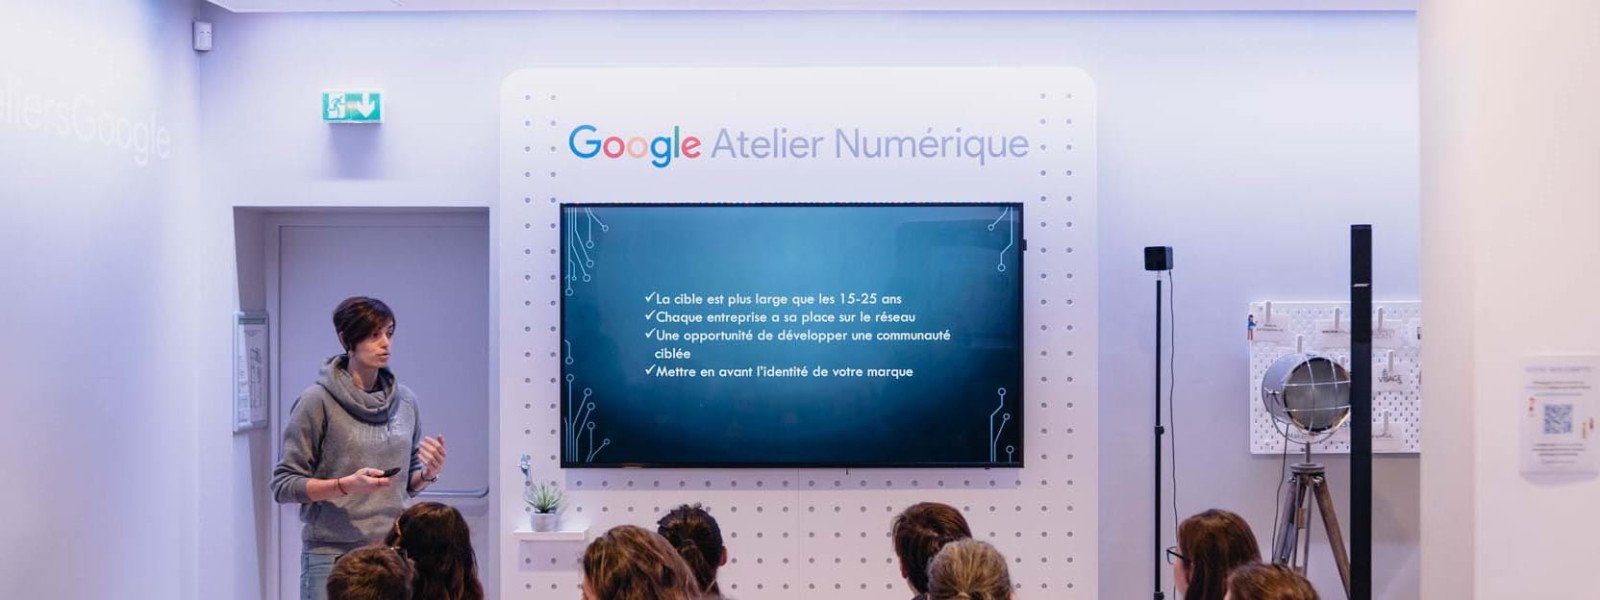 Google Ateliers Numériques - Initiation à la Cyber Sécurité